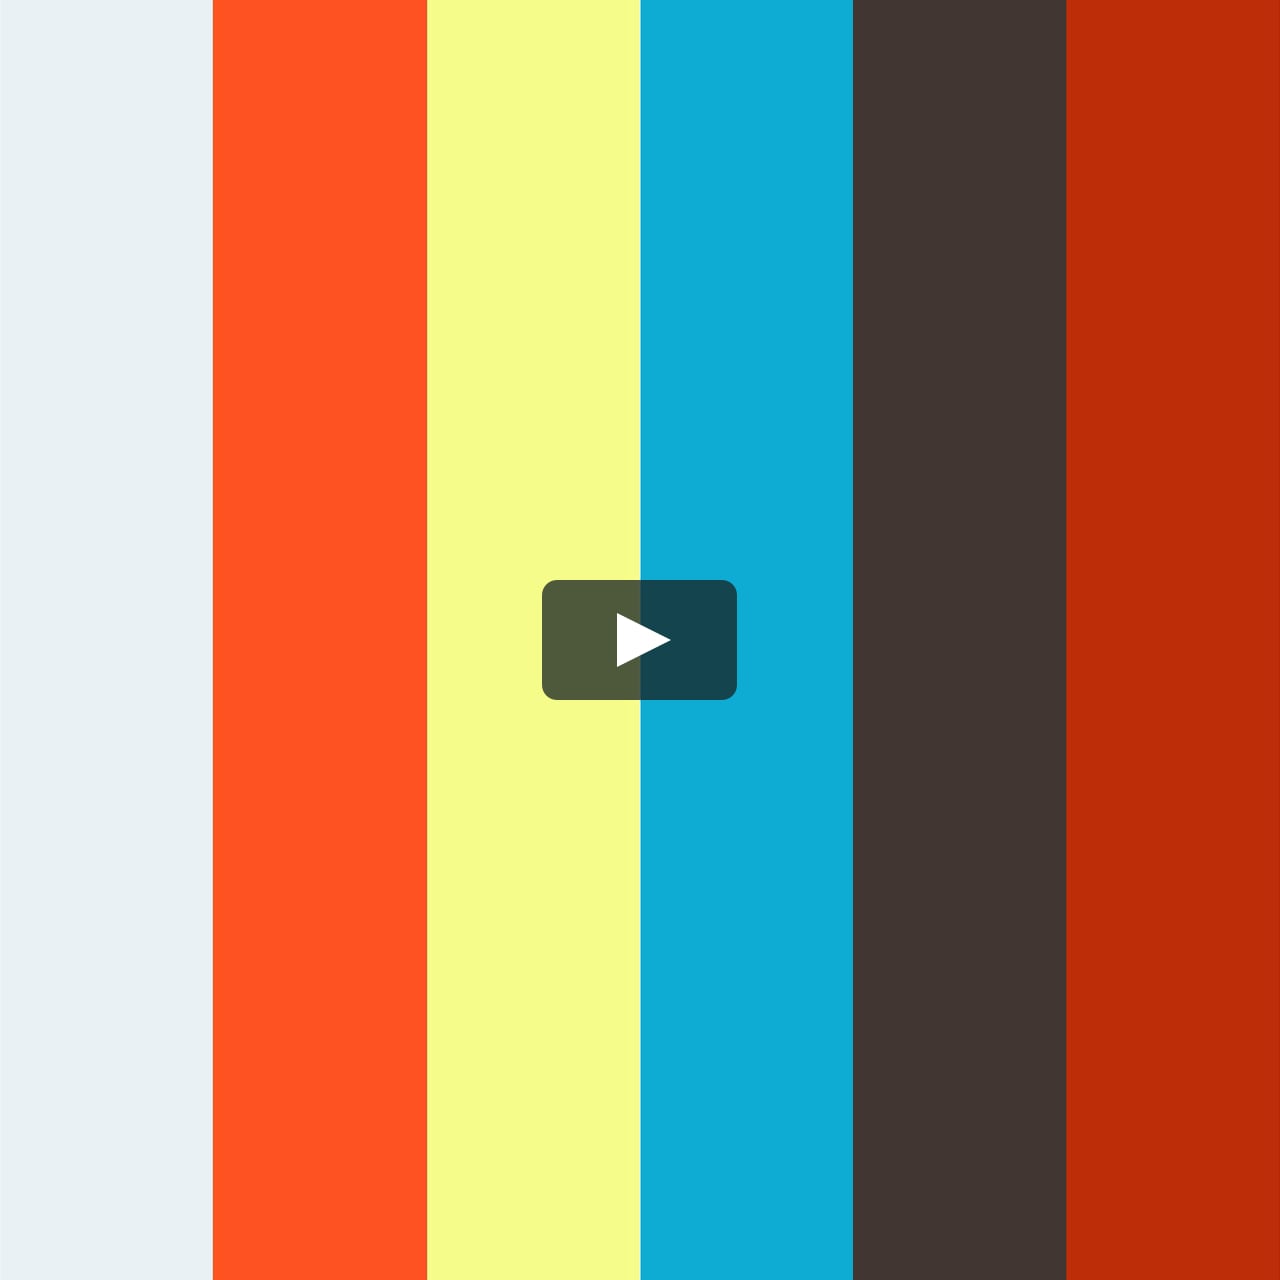 夏らしいサンリオ キティちゃん と打ち上げ花火のコラボ弁当 On Vimeo